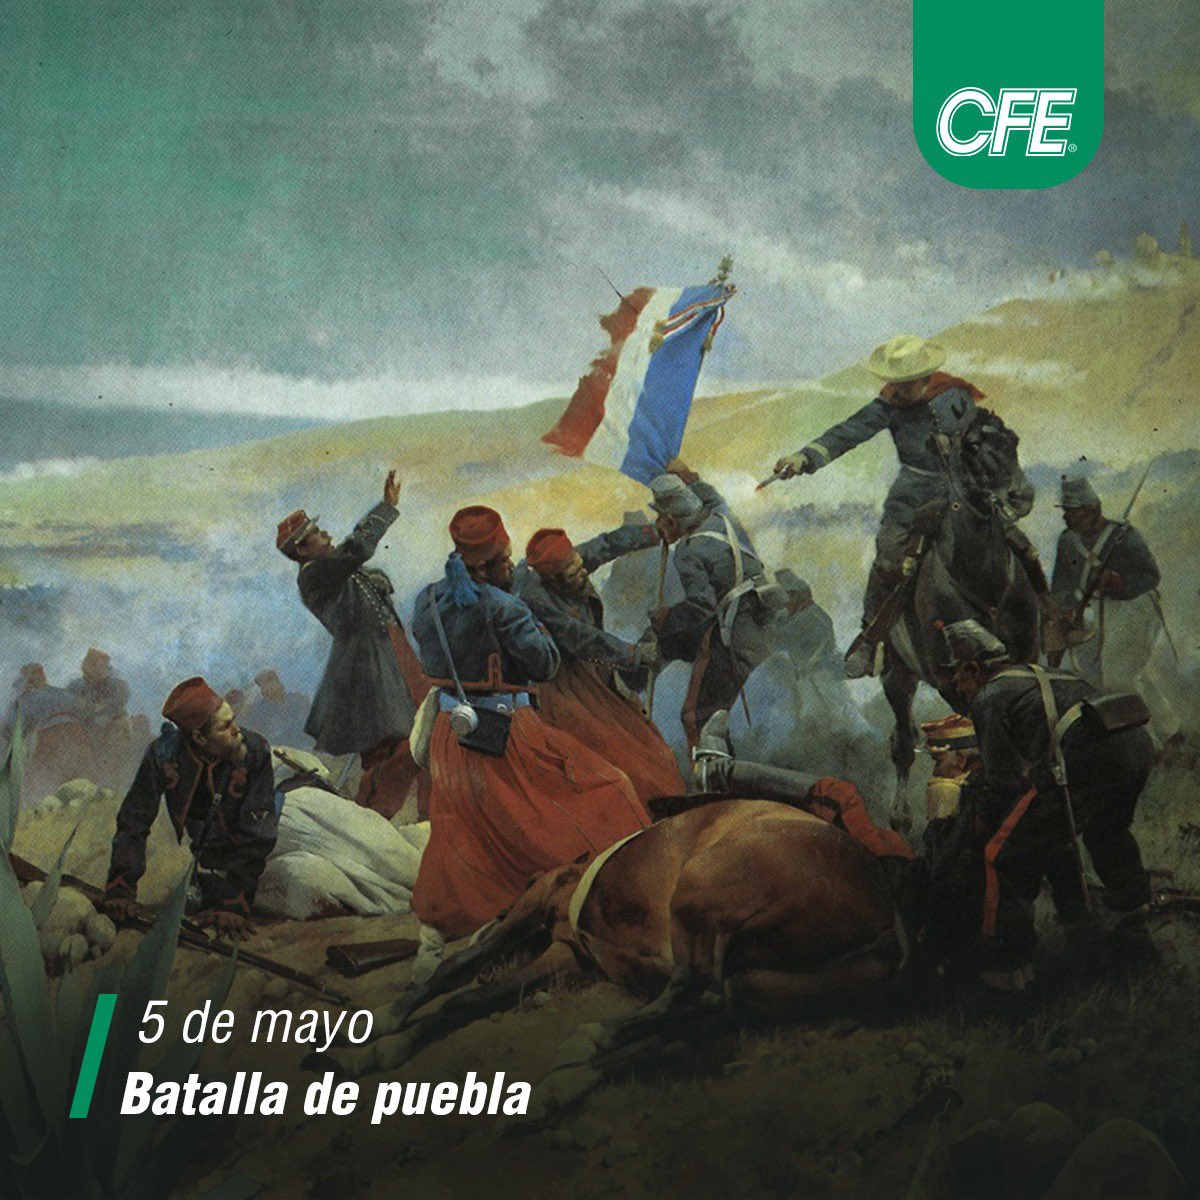 #EfeméridesCFE | El 5 de mayo es más que una batalla; es un símbolo de la resistencia y la lucha por la libertad. En 1862, el Ejército de Oriente defendió heroicamente la soberanía nacional.